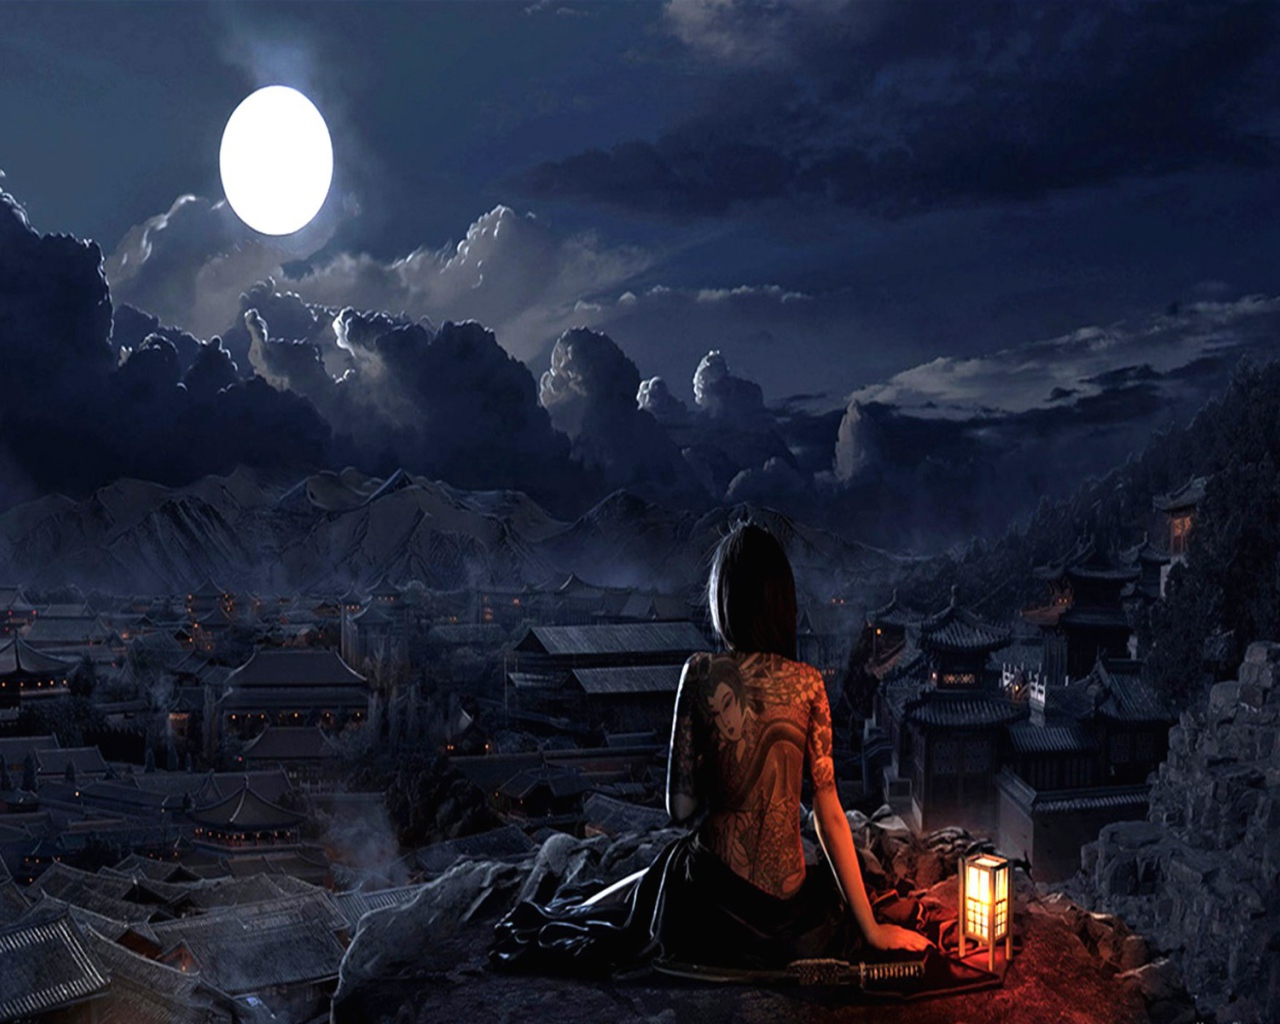 Японская девушка смотрит на луну